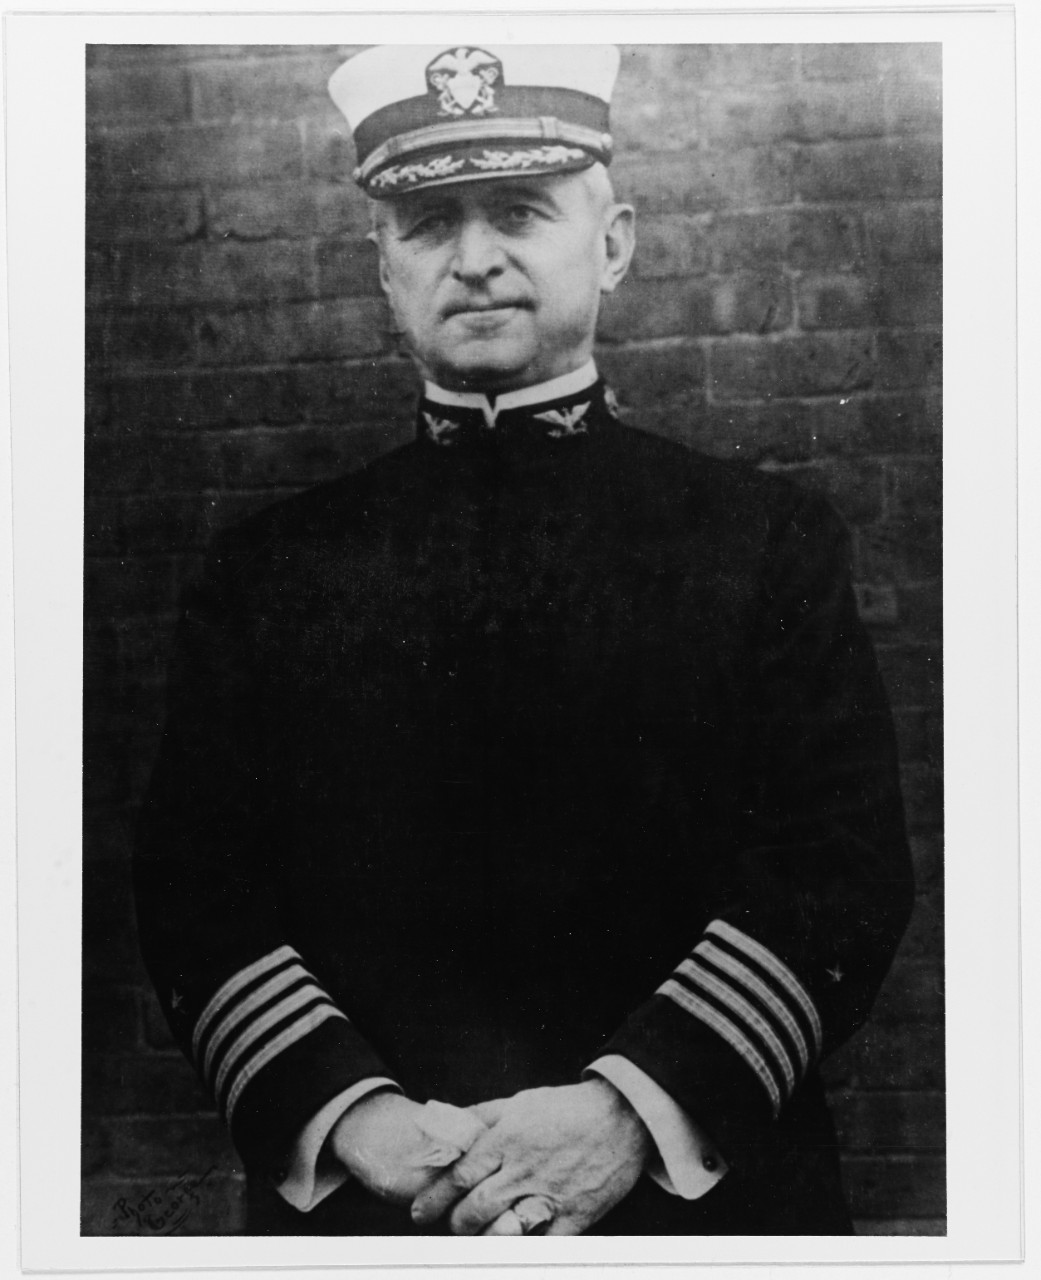 Captain William R. Rush, USN